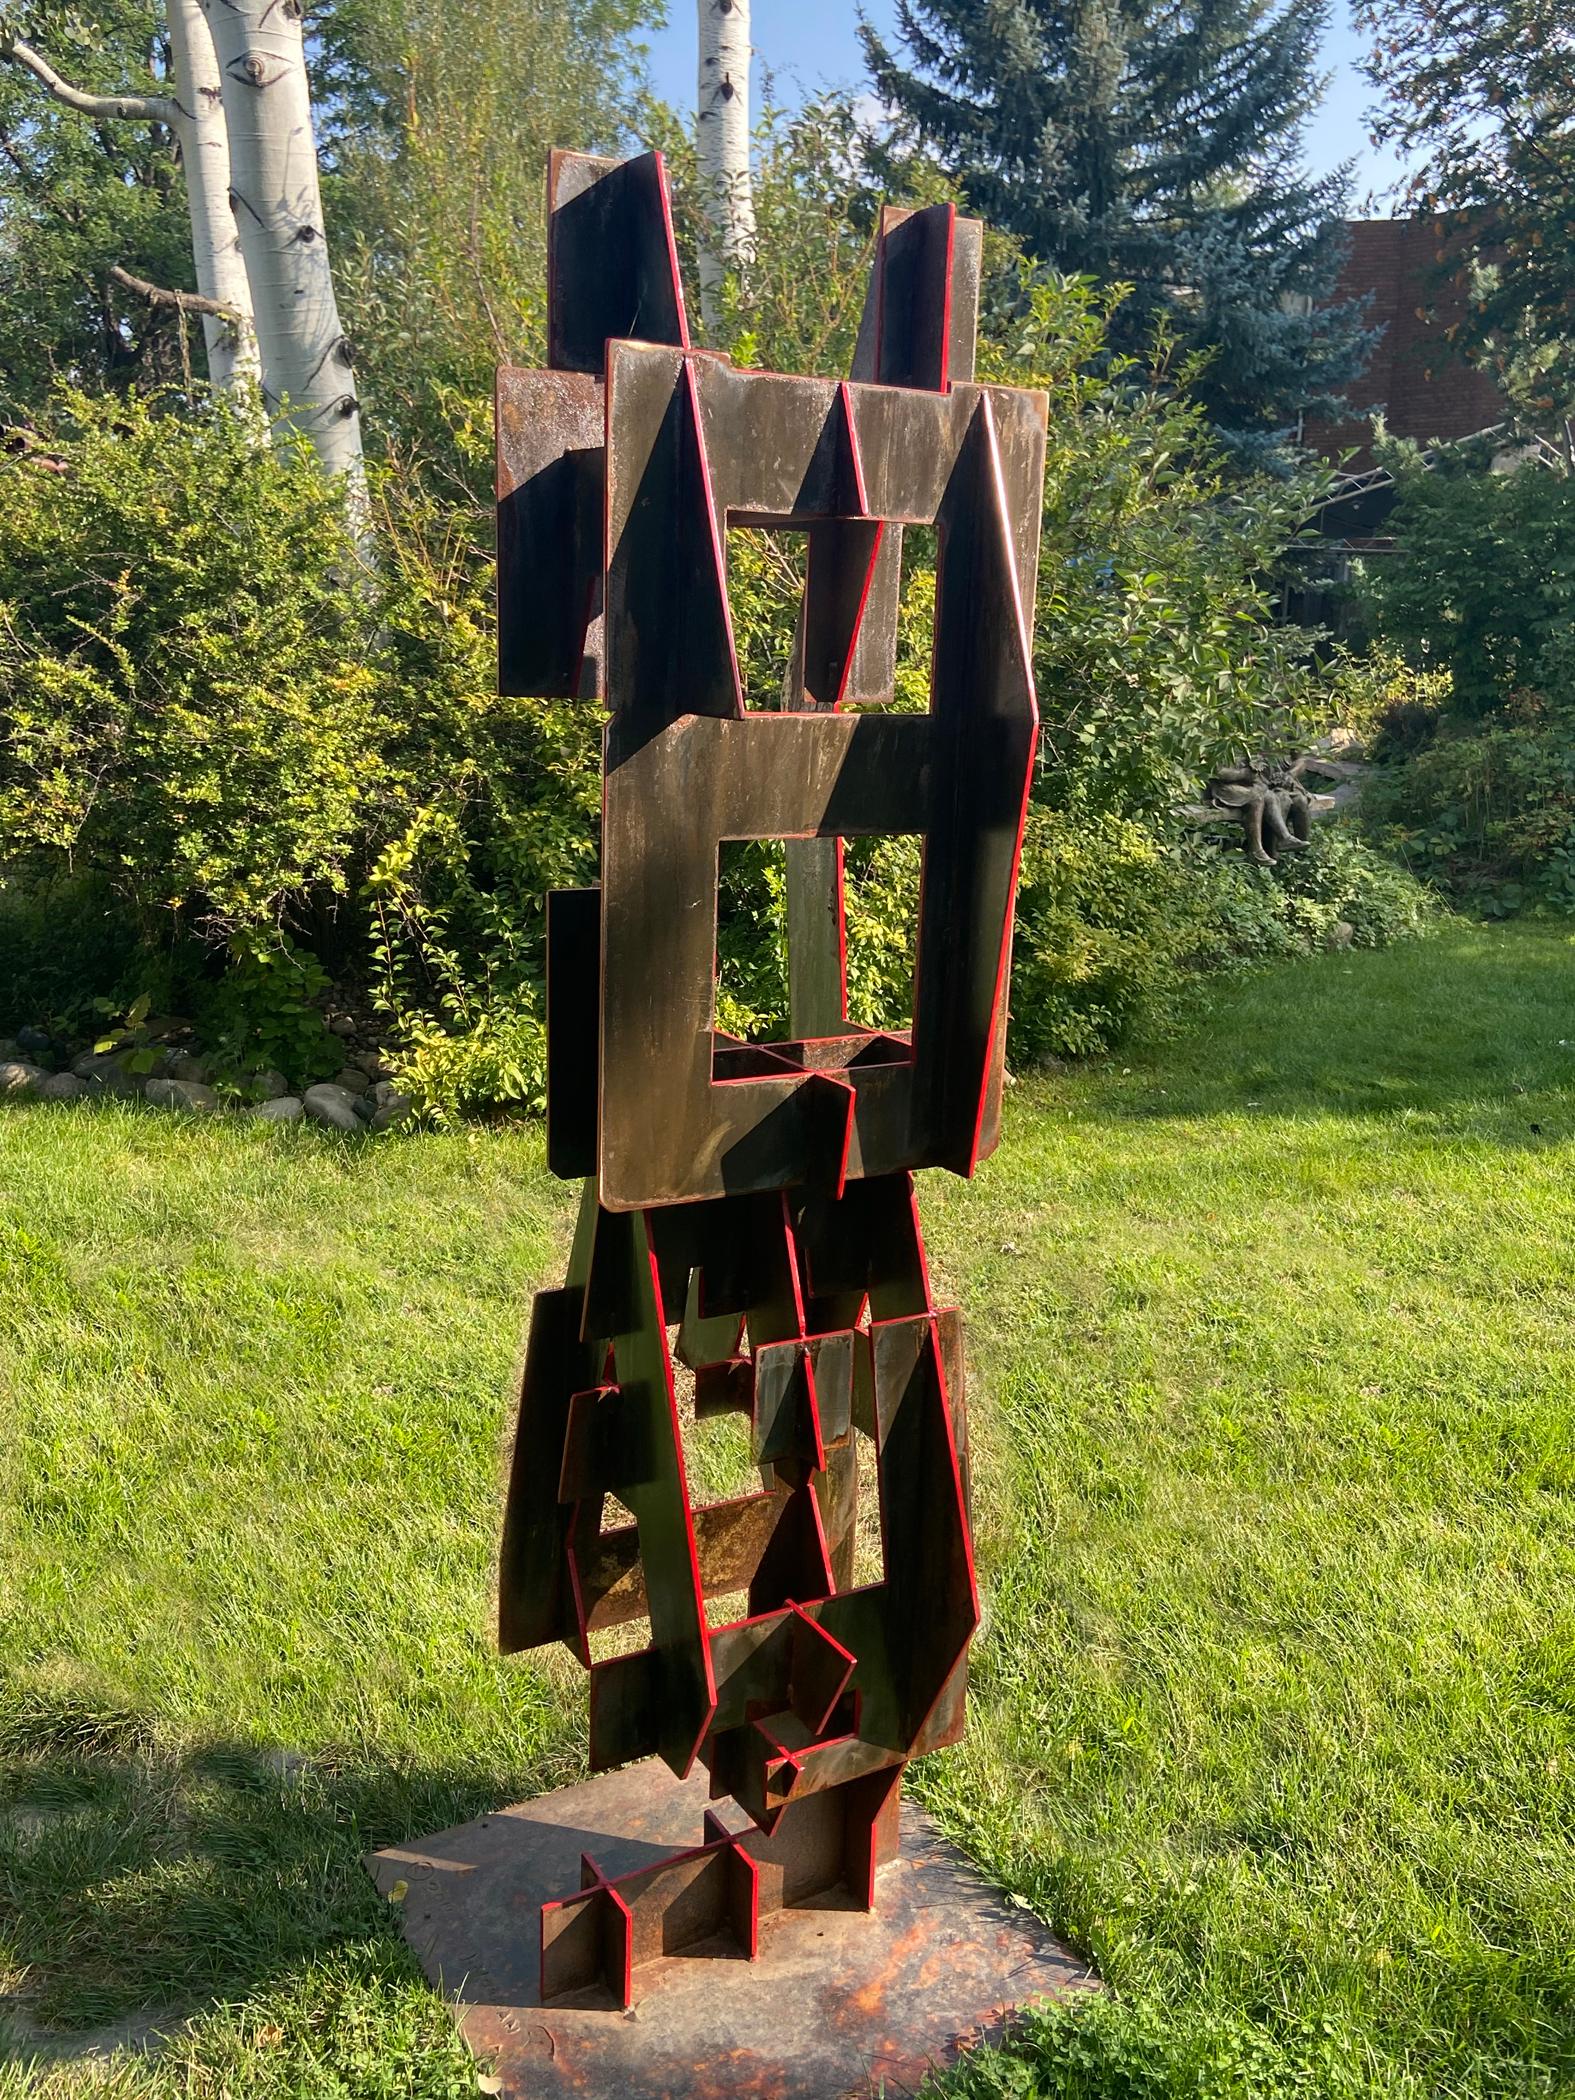 Home/Away - Sculpture by Joe Norman